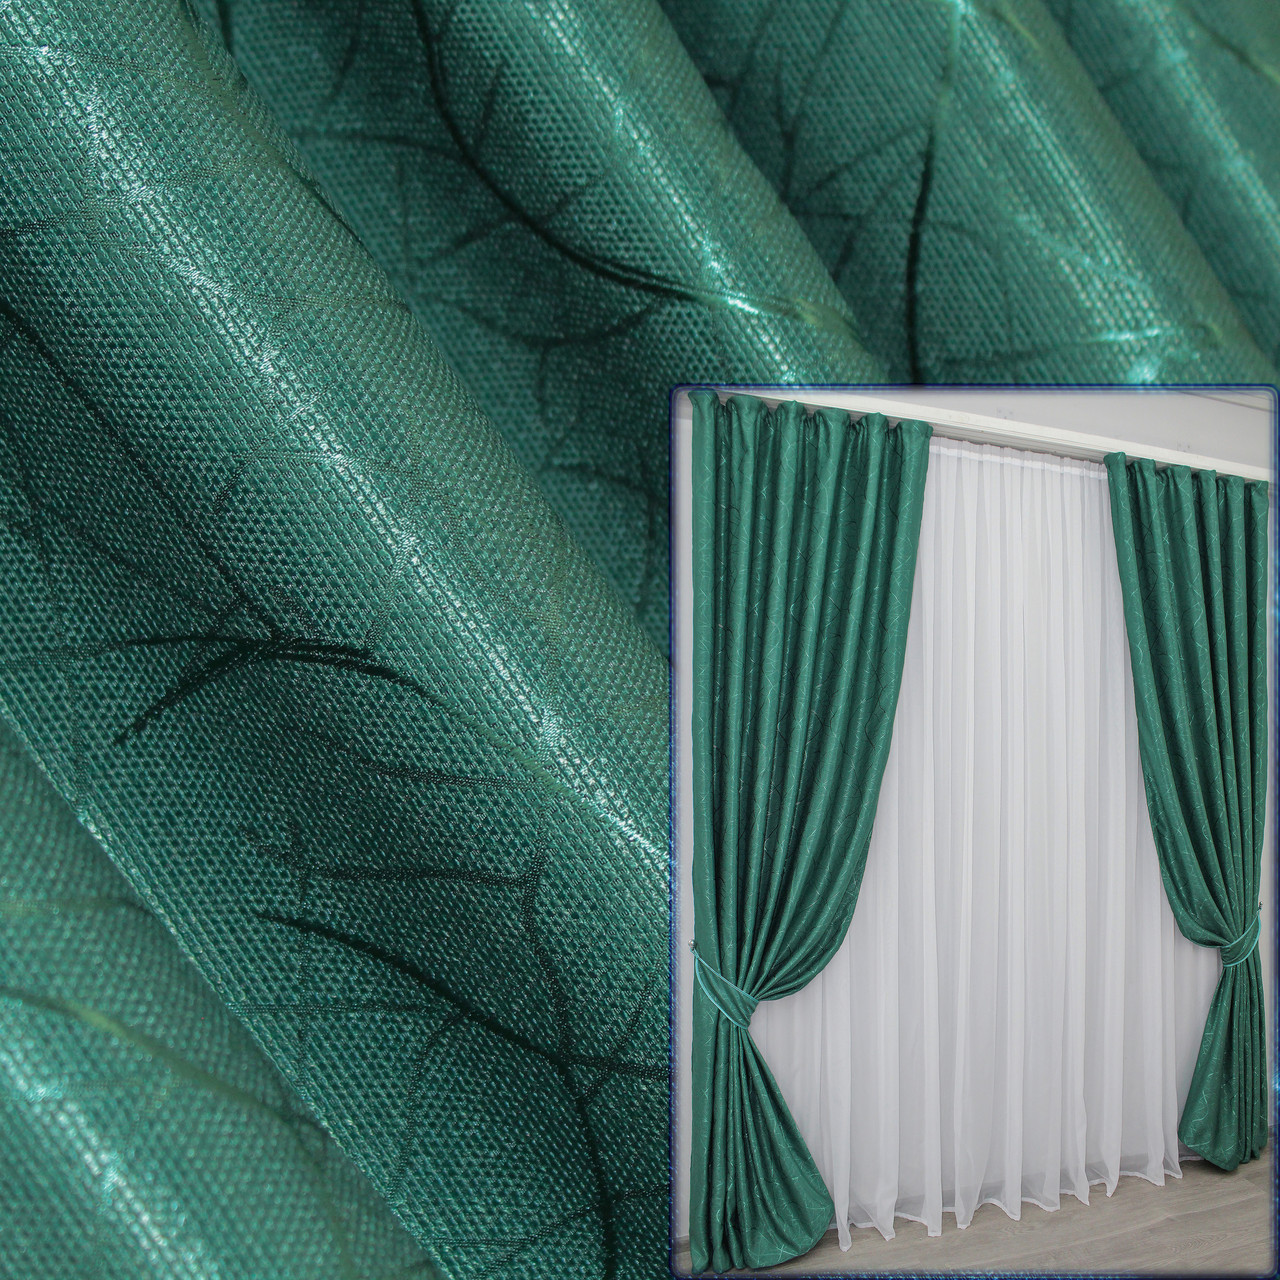 Комплект(2шт. 1х2.7м) готових штор, льон рогожка, колекція "Савана",Колір темно-зелений .Код 633ш 31-002, фото 1